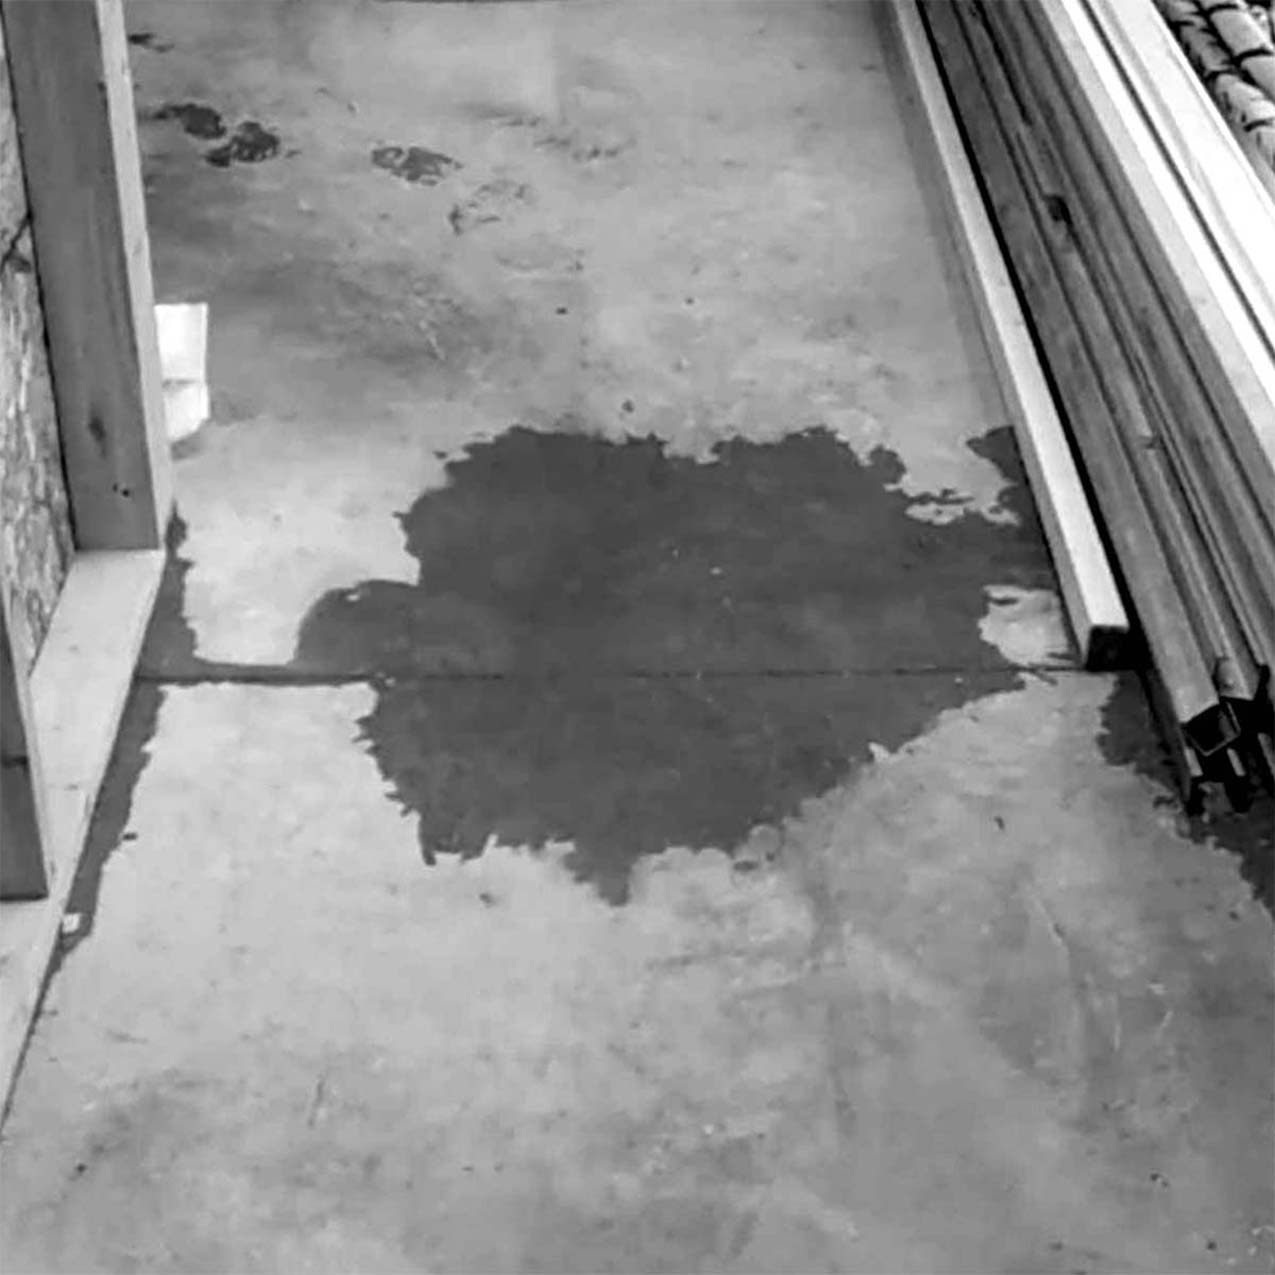 Leak on concrete floor.